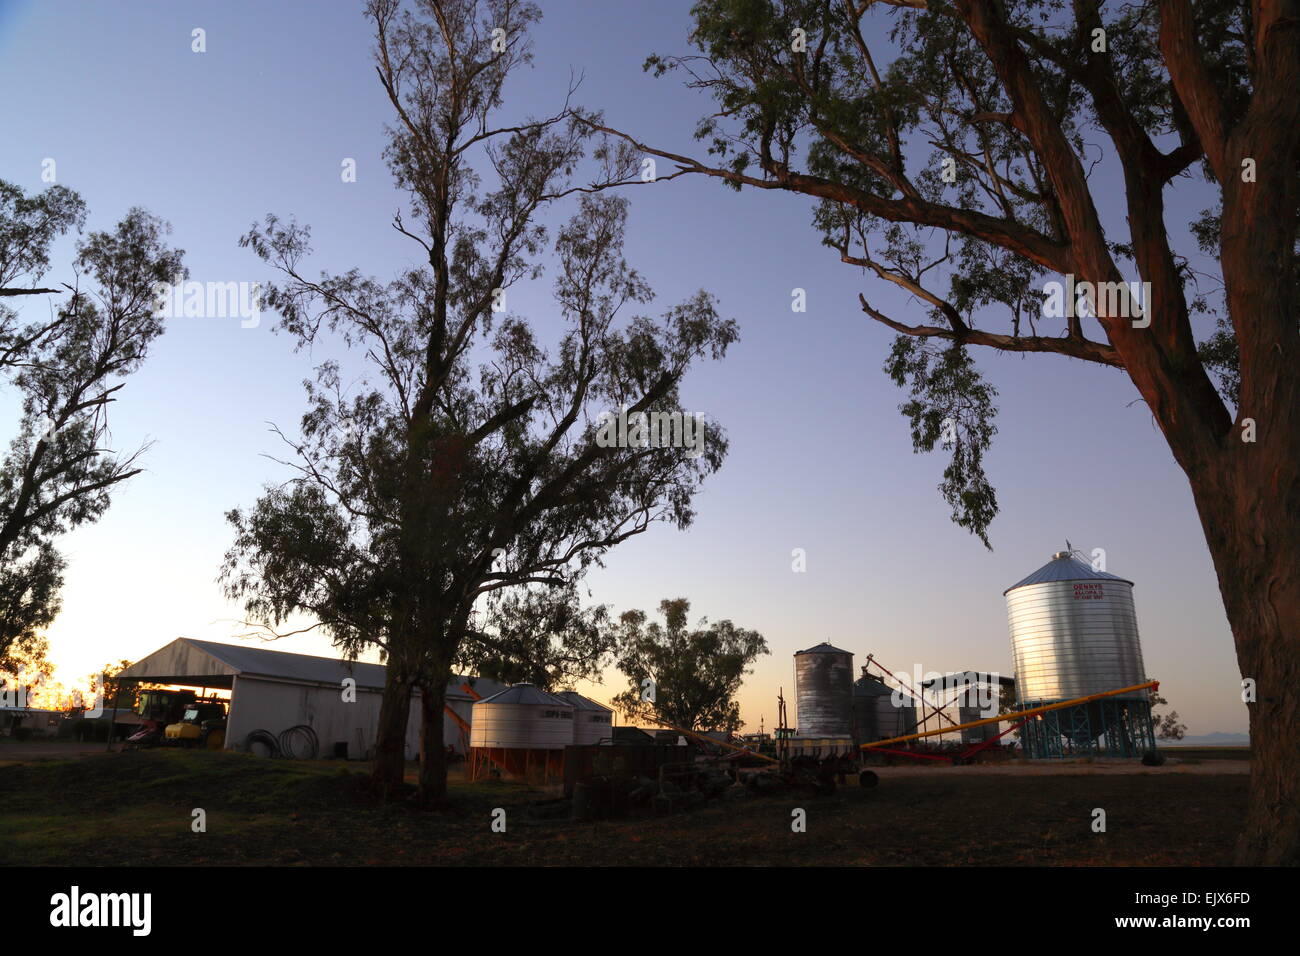 Eine ländliche Morgendämmerung umhüllt einen Bauernhof Schuppen, Silo, landwirtschaftliche Geräte und Eukalyptus-Bäume in der Nähe von Caroona, NSW, Australien. Stockfoto